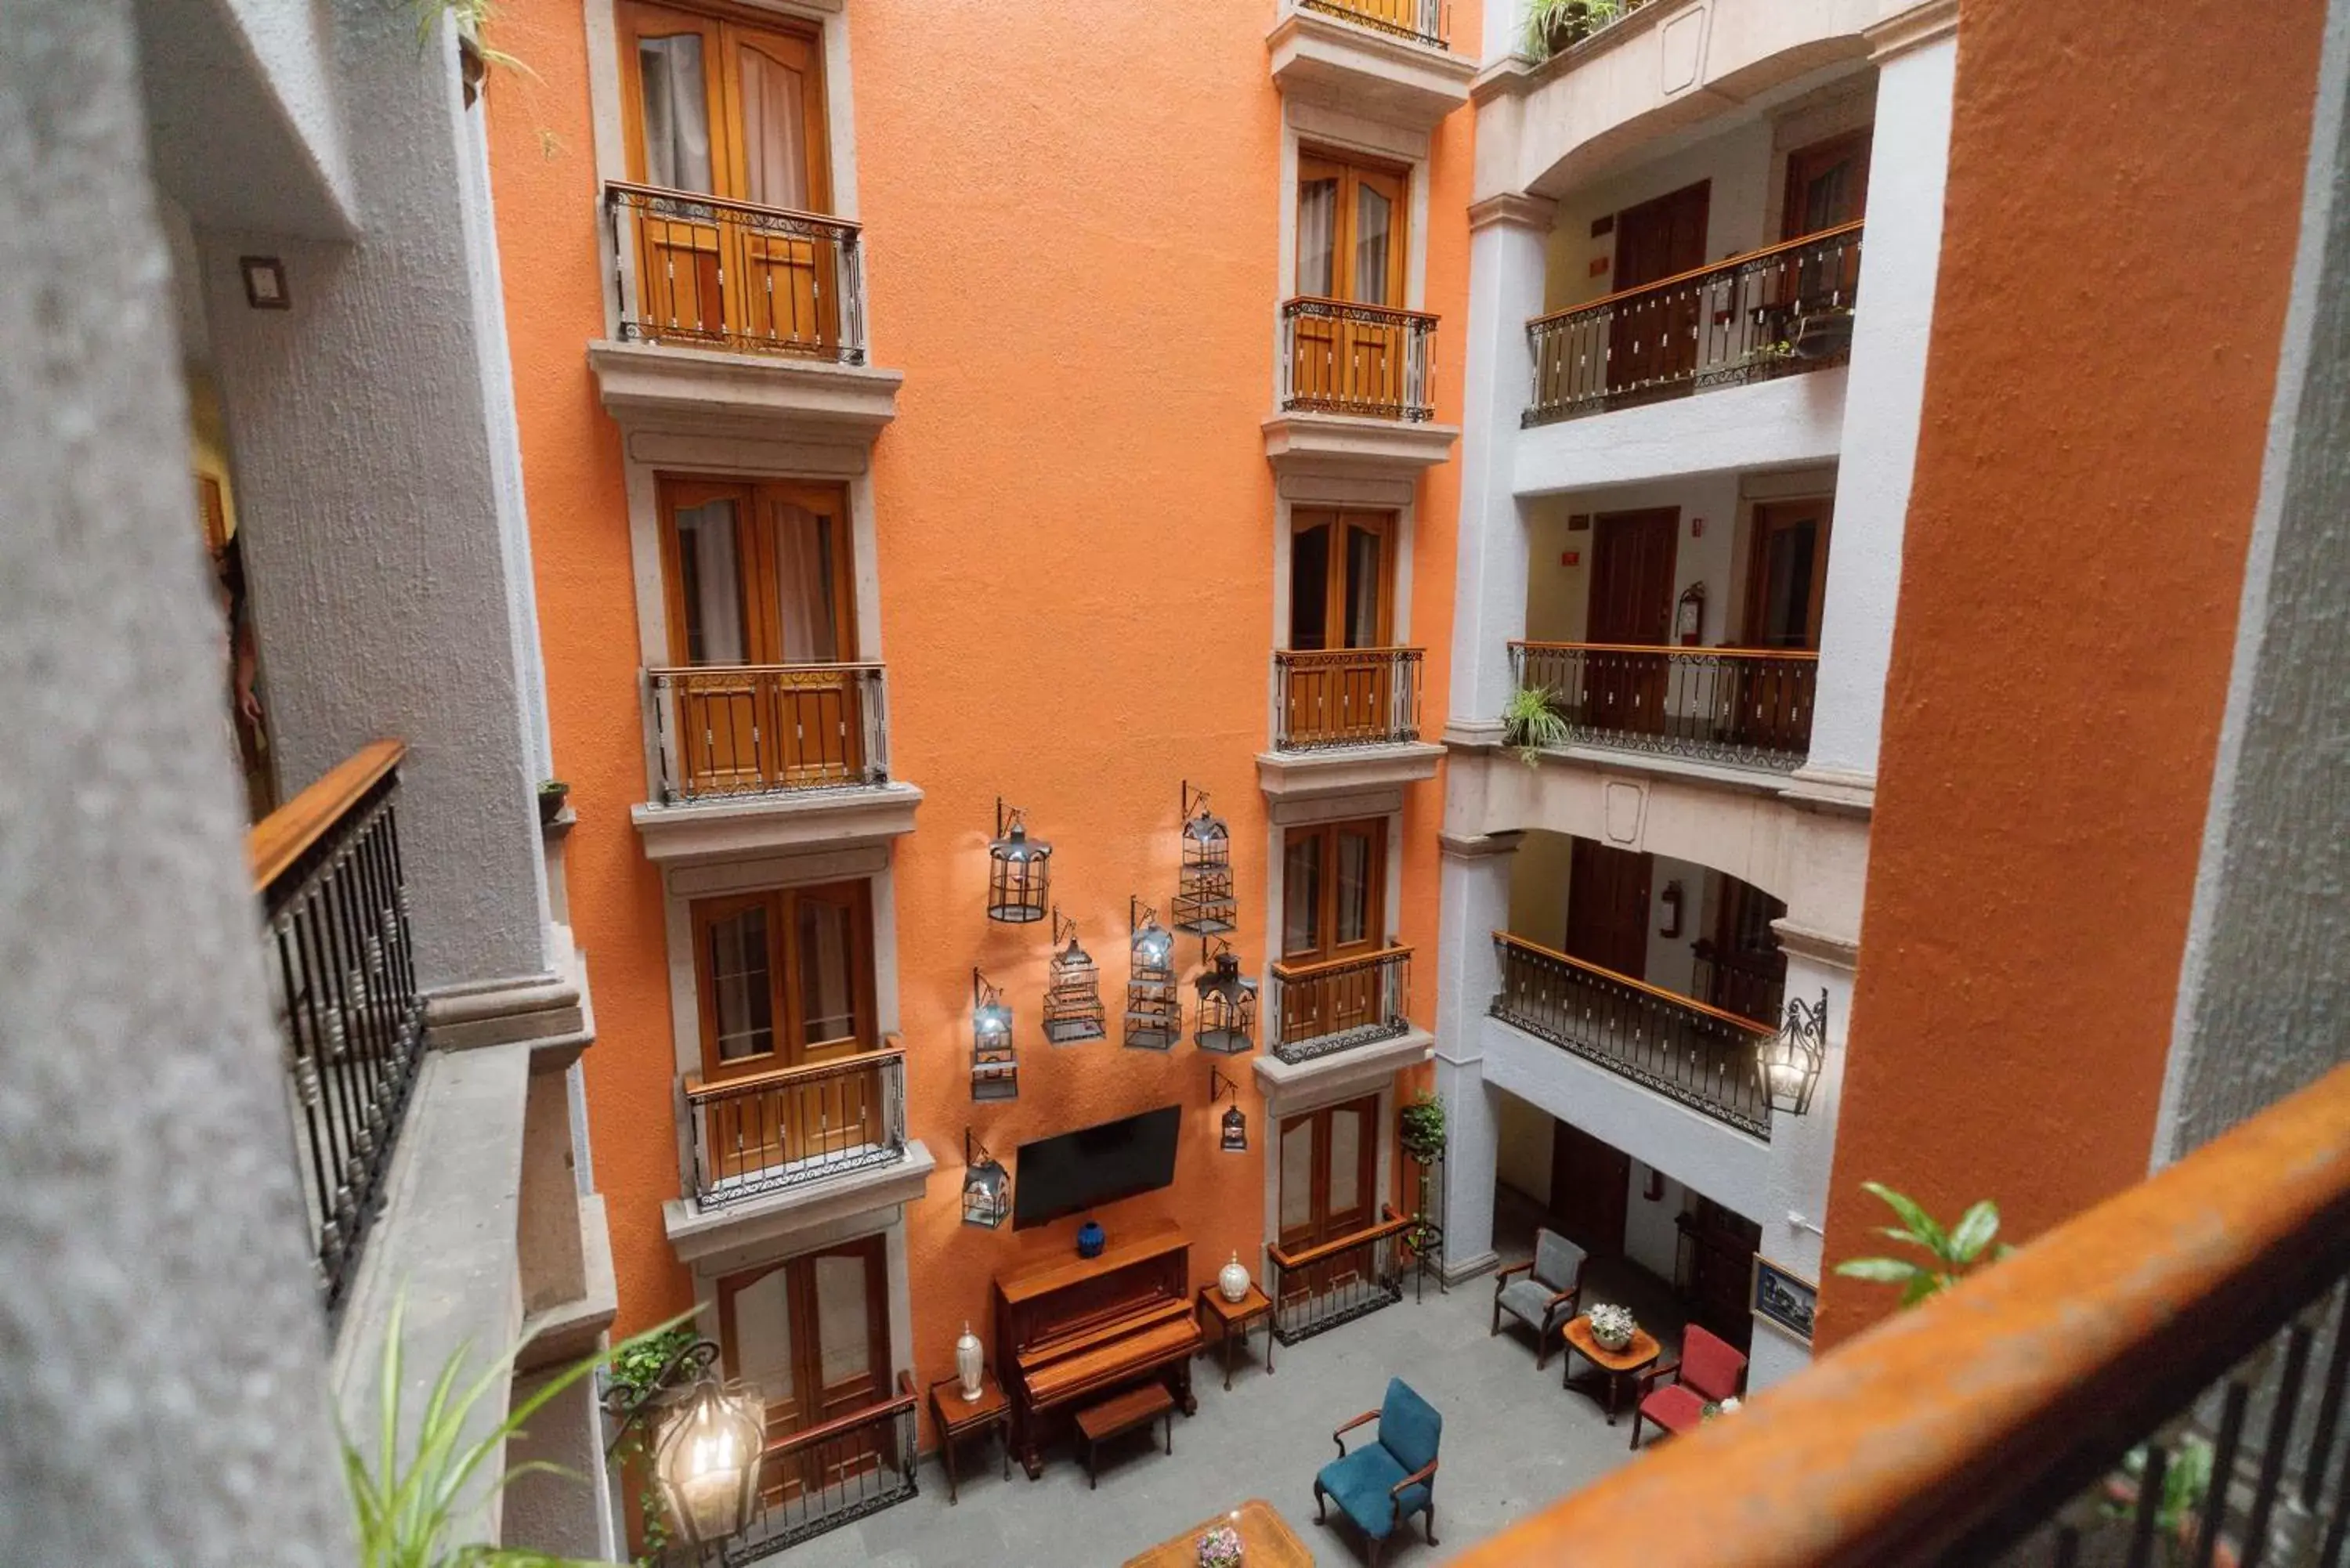 Property building in Hotel Santiago De Compostela - Guadalajara Centro Historico